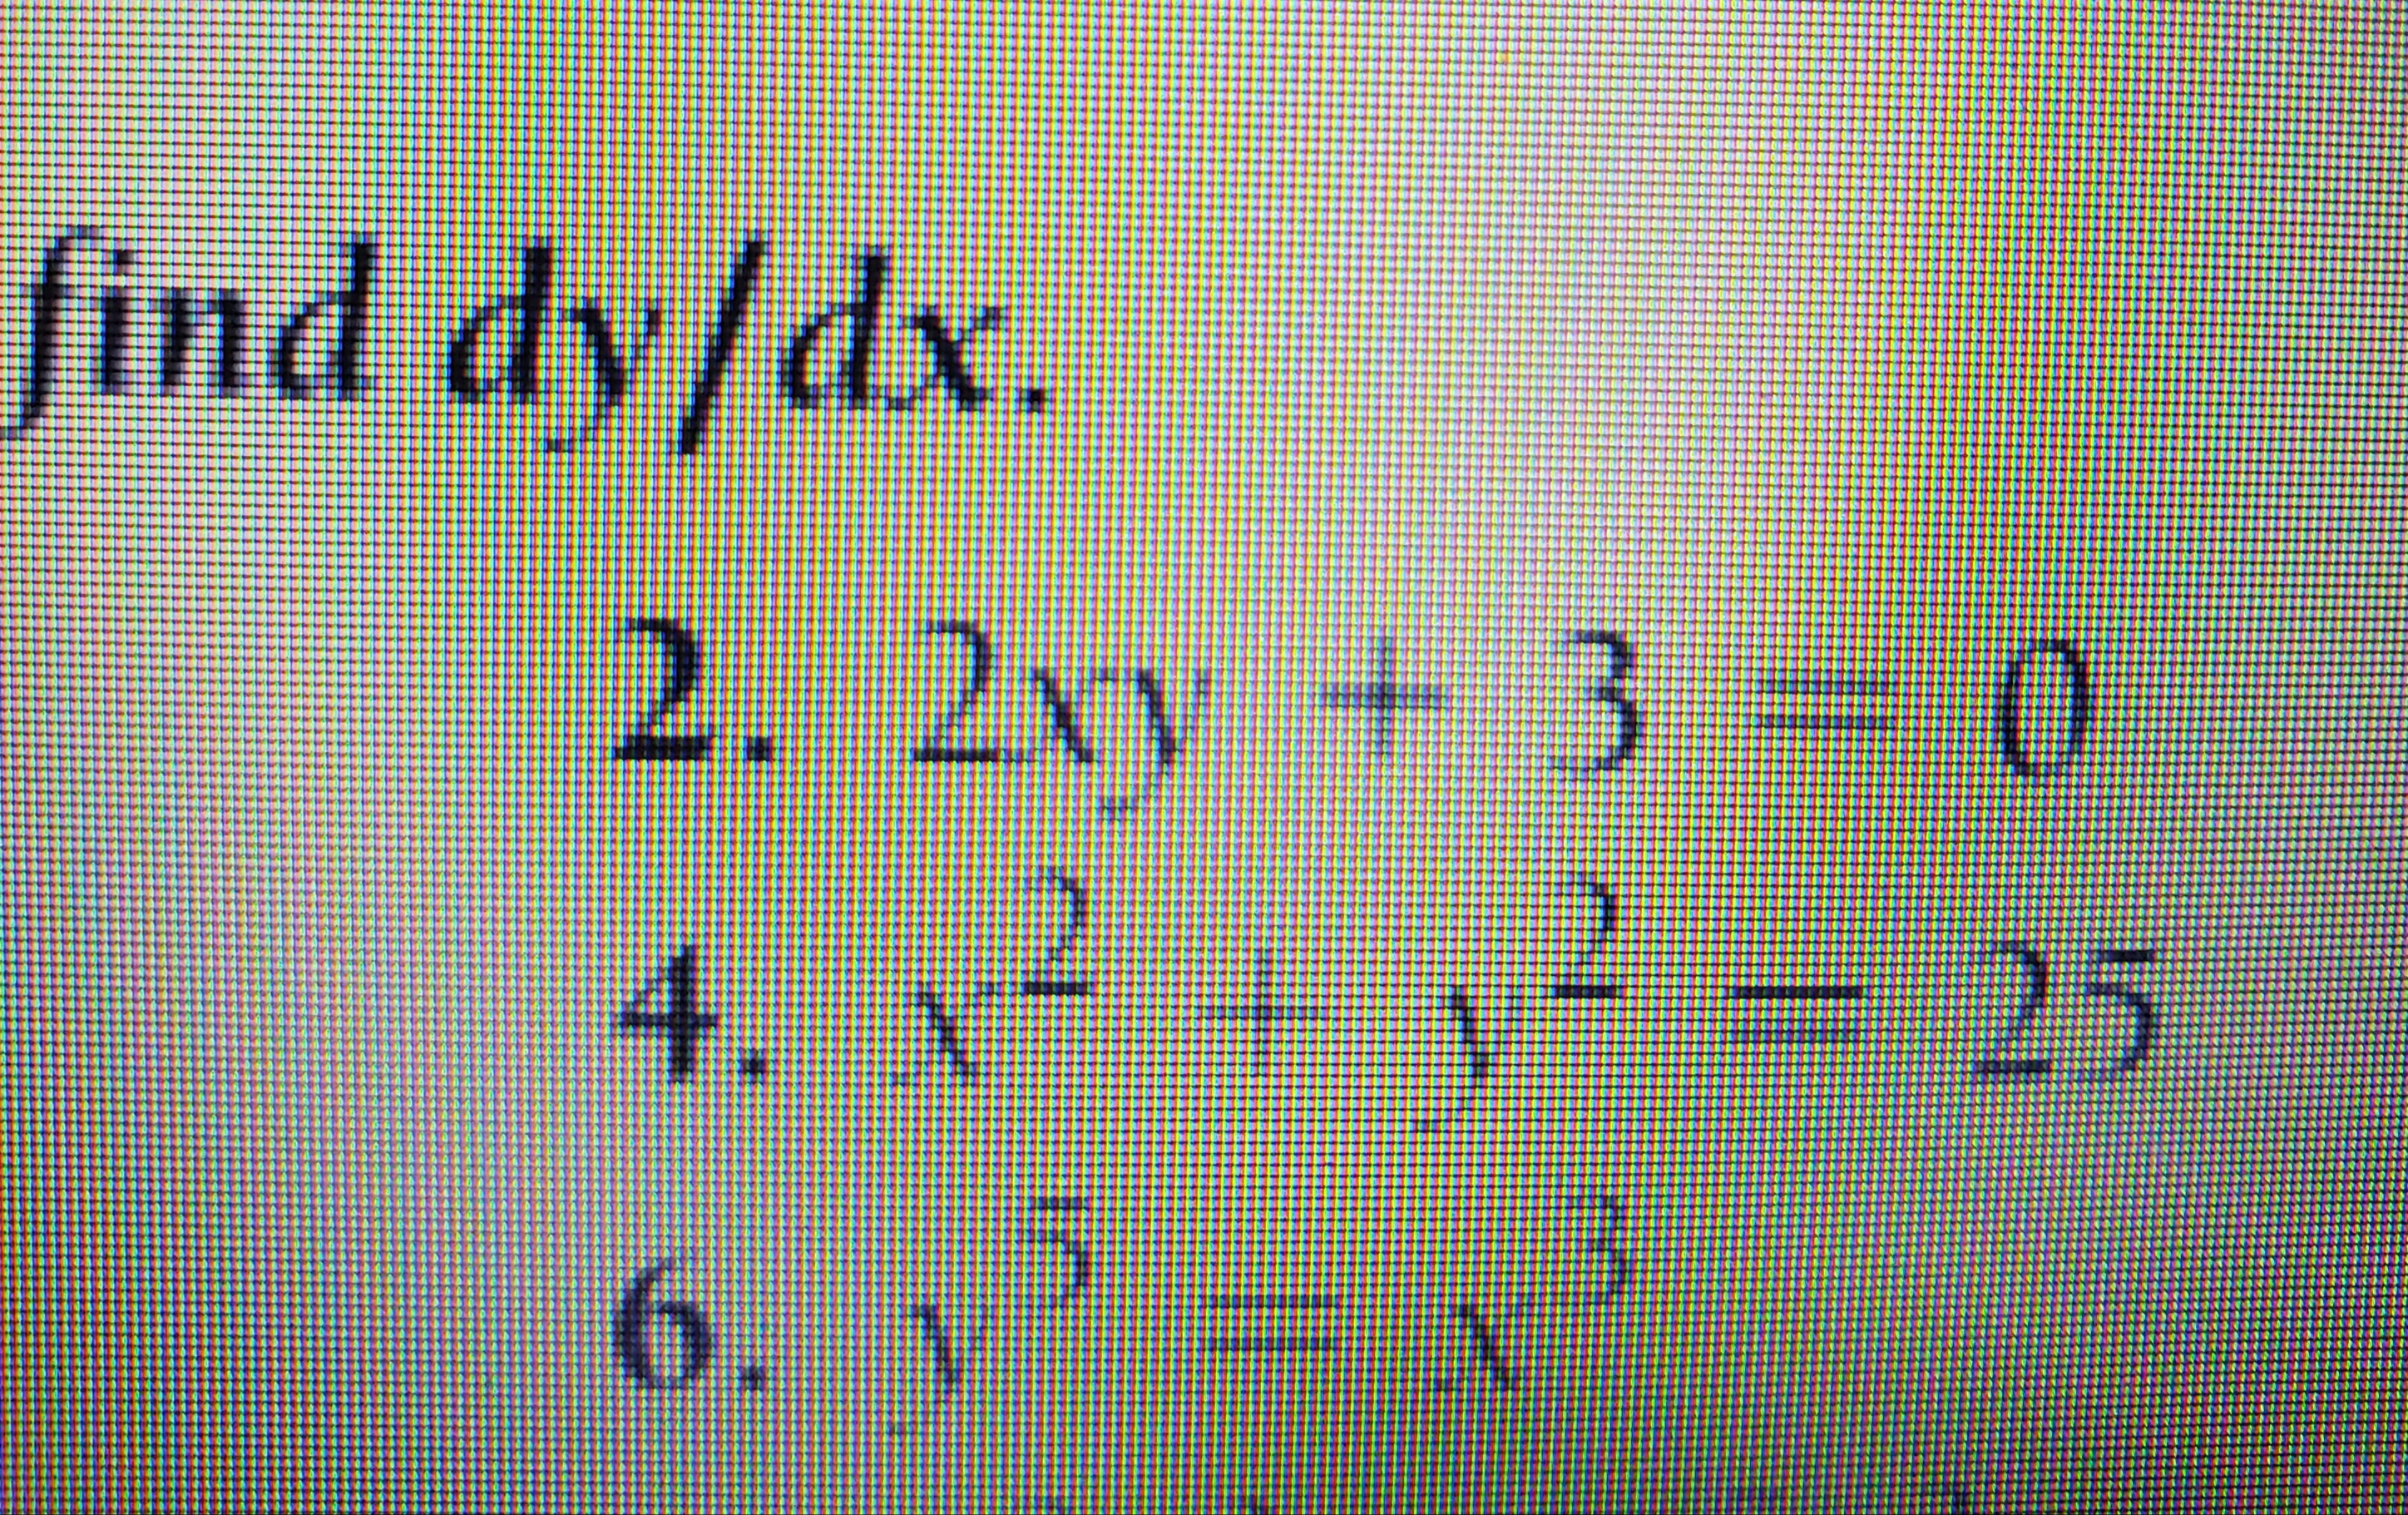 find dy/dx.
2. 2xy +3
0
2 + y=
25
4. 1-
5
6. 1
